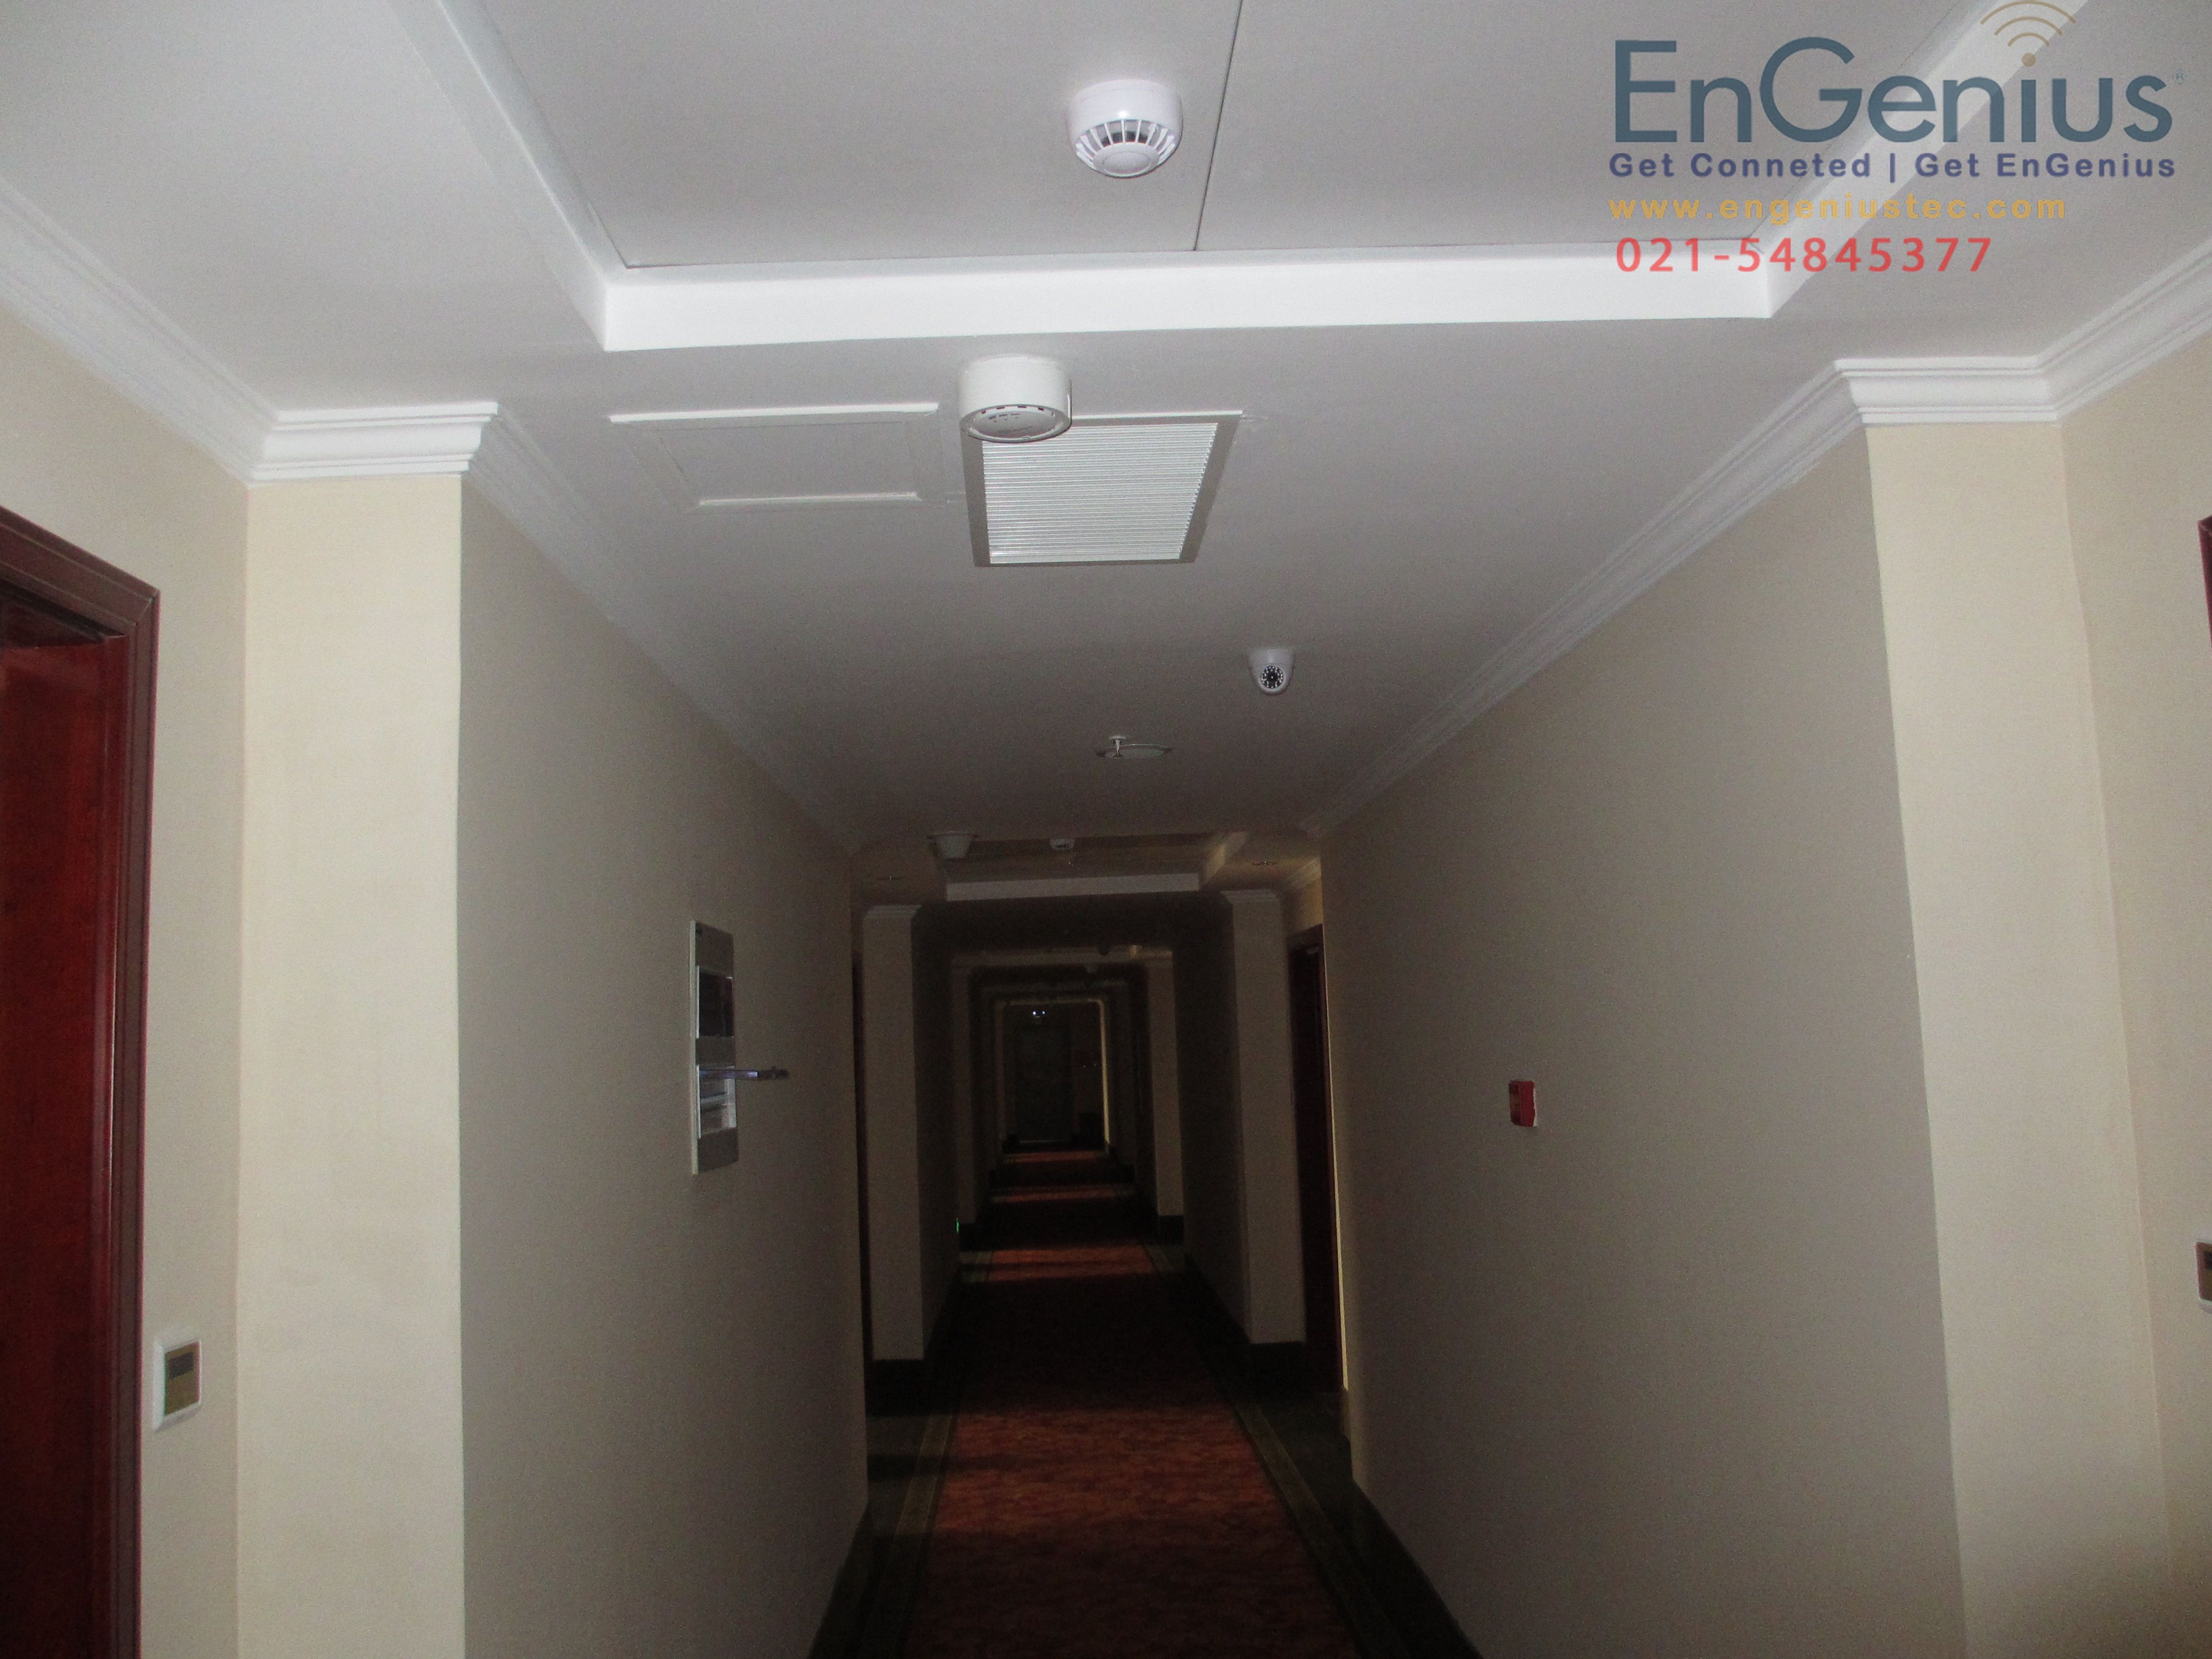 EnGenius EAP300酒店无线覆盖方案